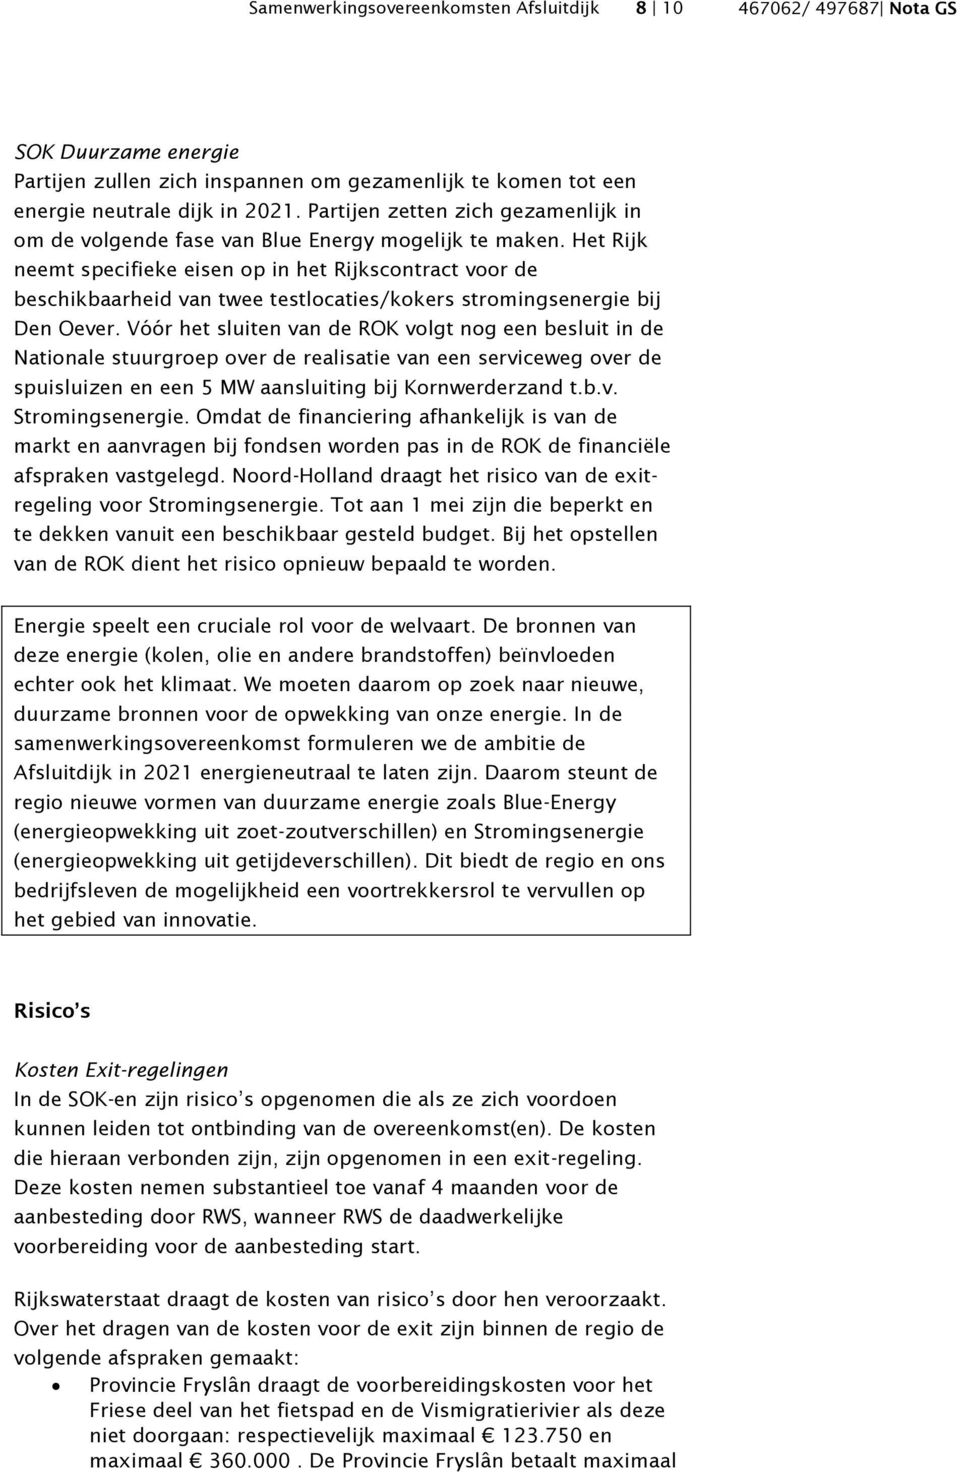 Het Rijk neemt specifieke eisen op in het Rijkscontract voor de beschikbaarheid van twee testlocaties/kokers stromingsenergie bij Den Oever.